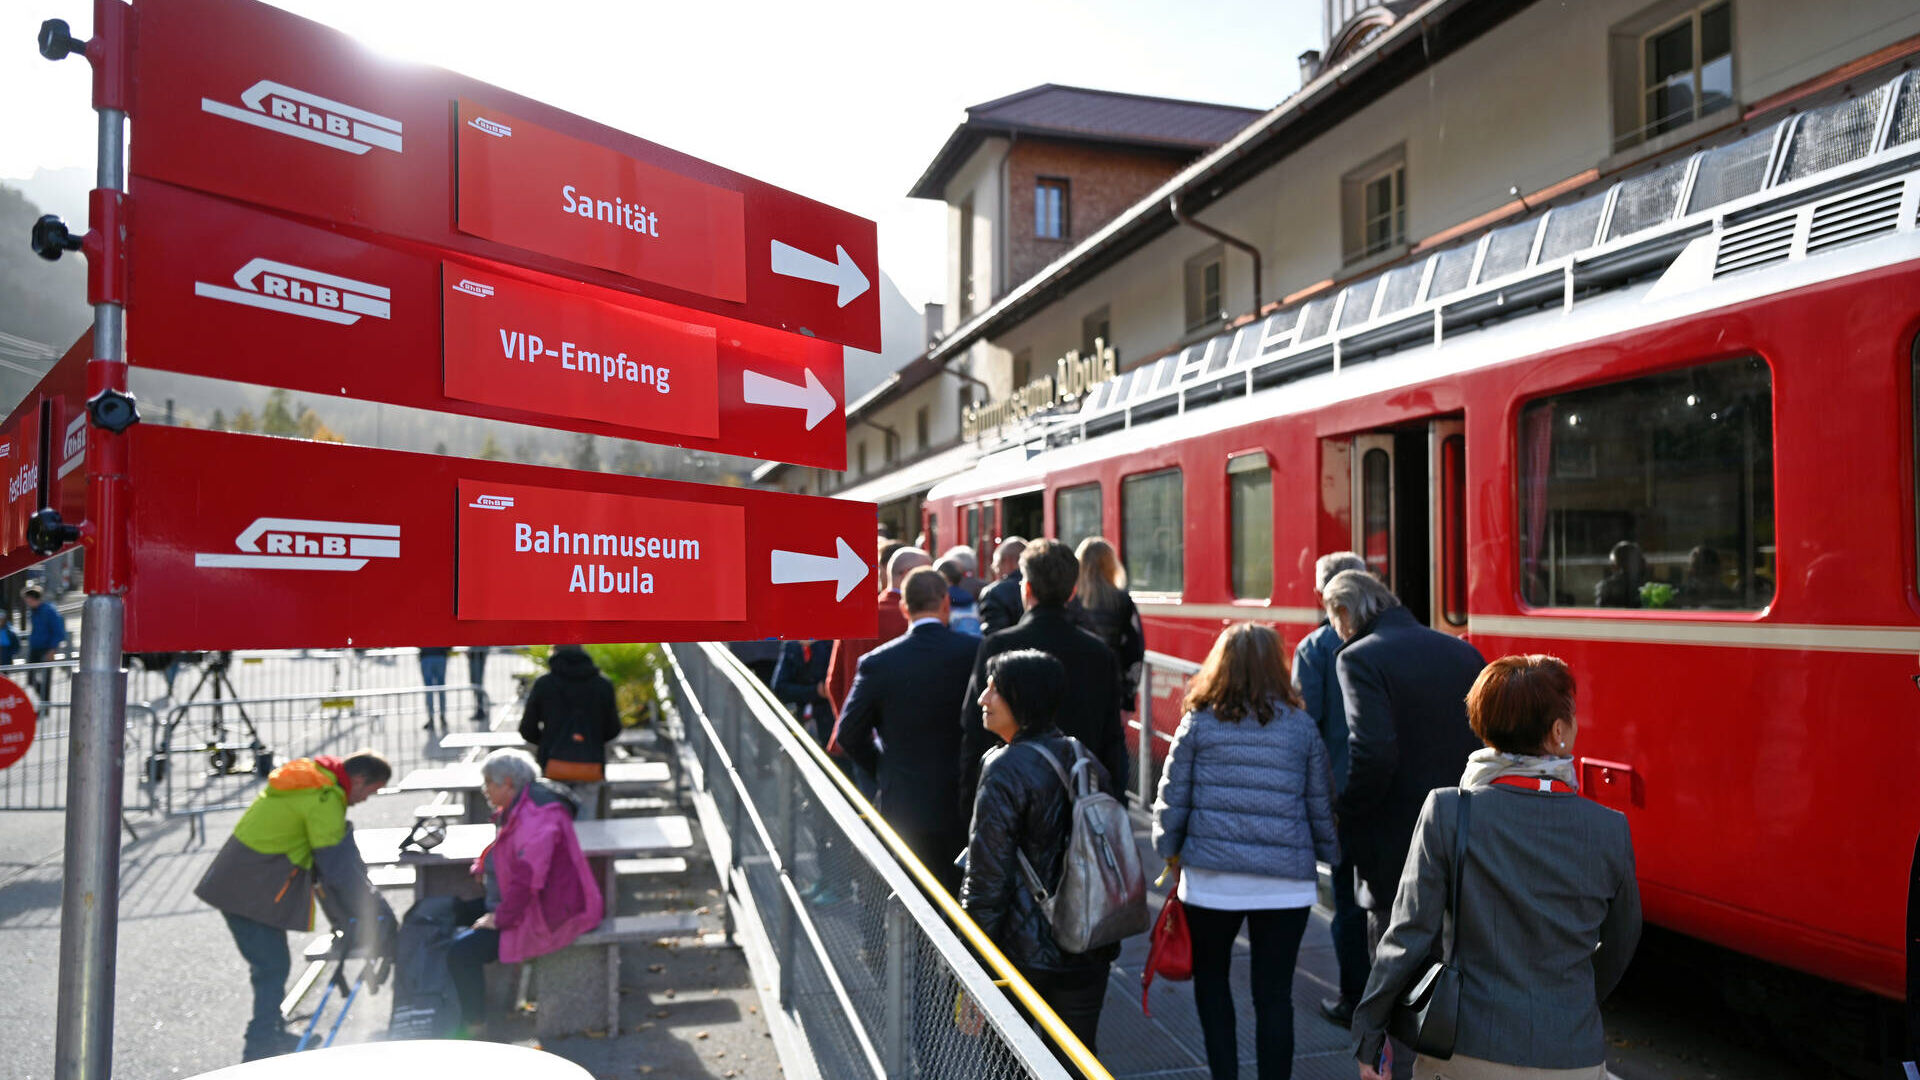 Заходи для громадськості Граубюндена під час рекорду найдовшого вузькоколійного поїзда у світі Ретійської залізниці